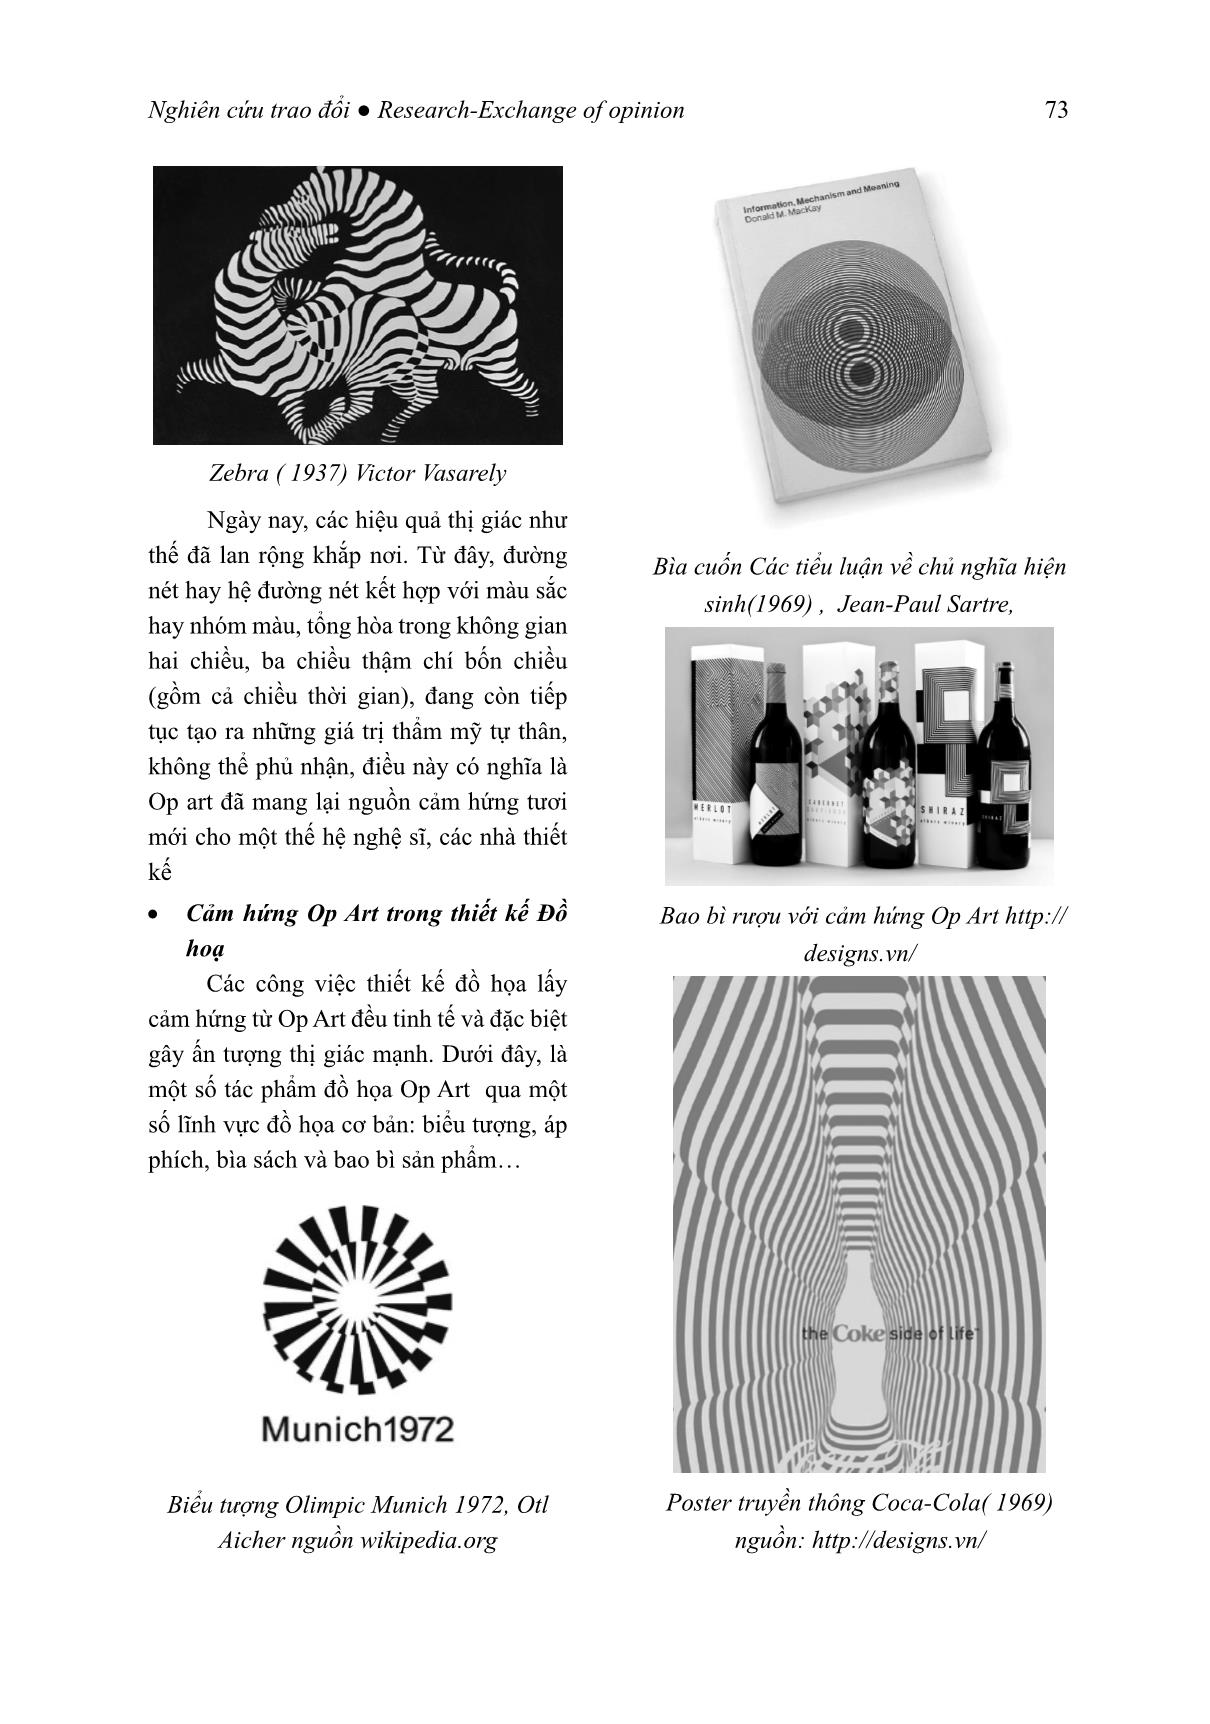 Ảnh hưởng của nghệ thuật quang học (OP art) đến lĩnh vực thiết kế hiện đại trang 6